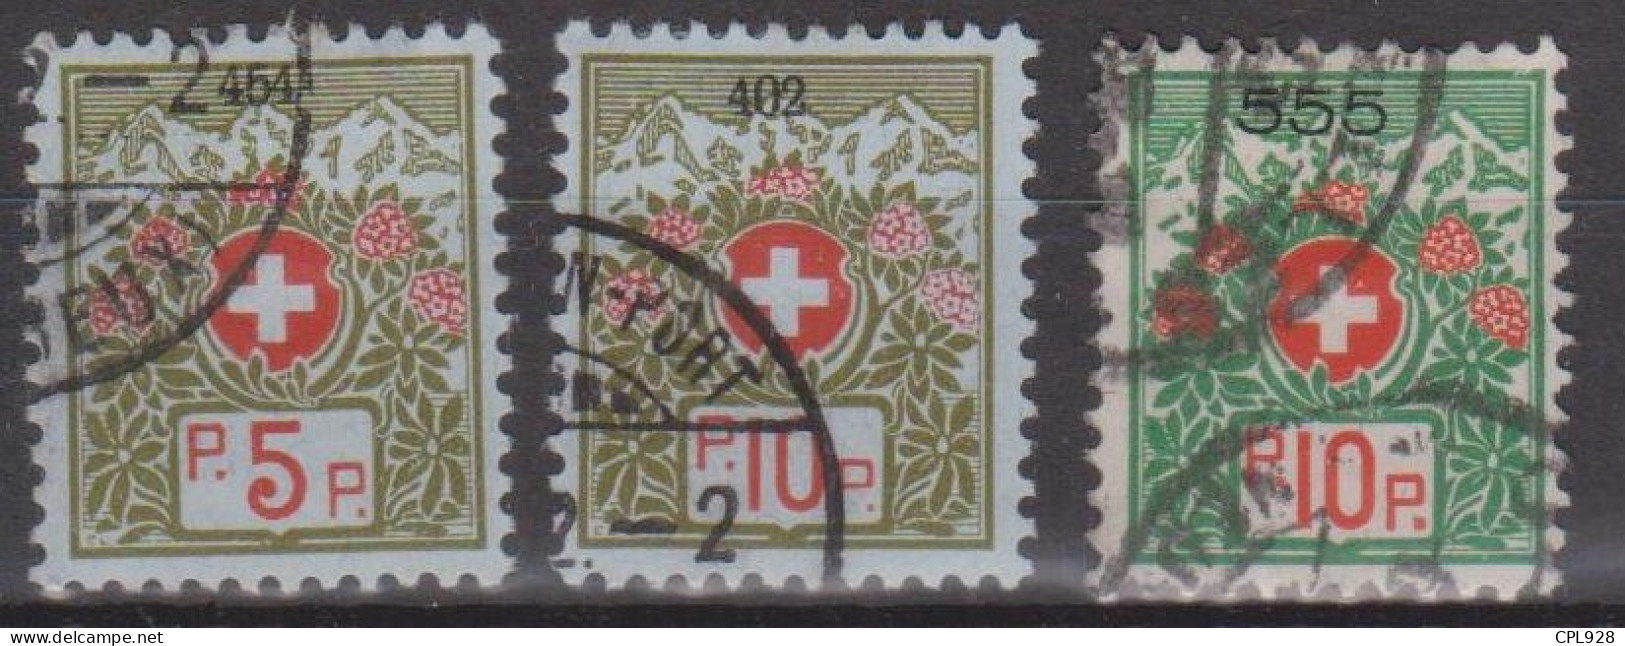 Suisse Timbre De Franchise N° 4A, 5A, Et 5B - Franquicia